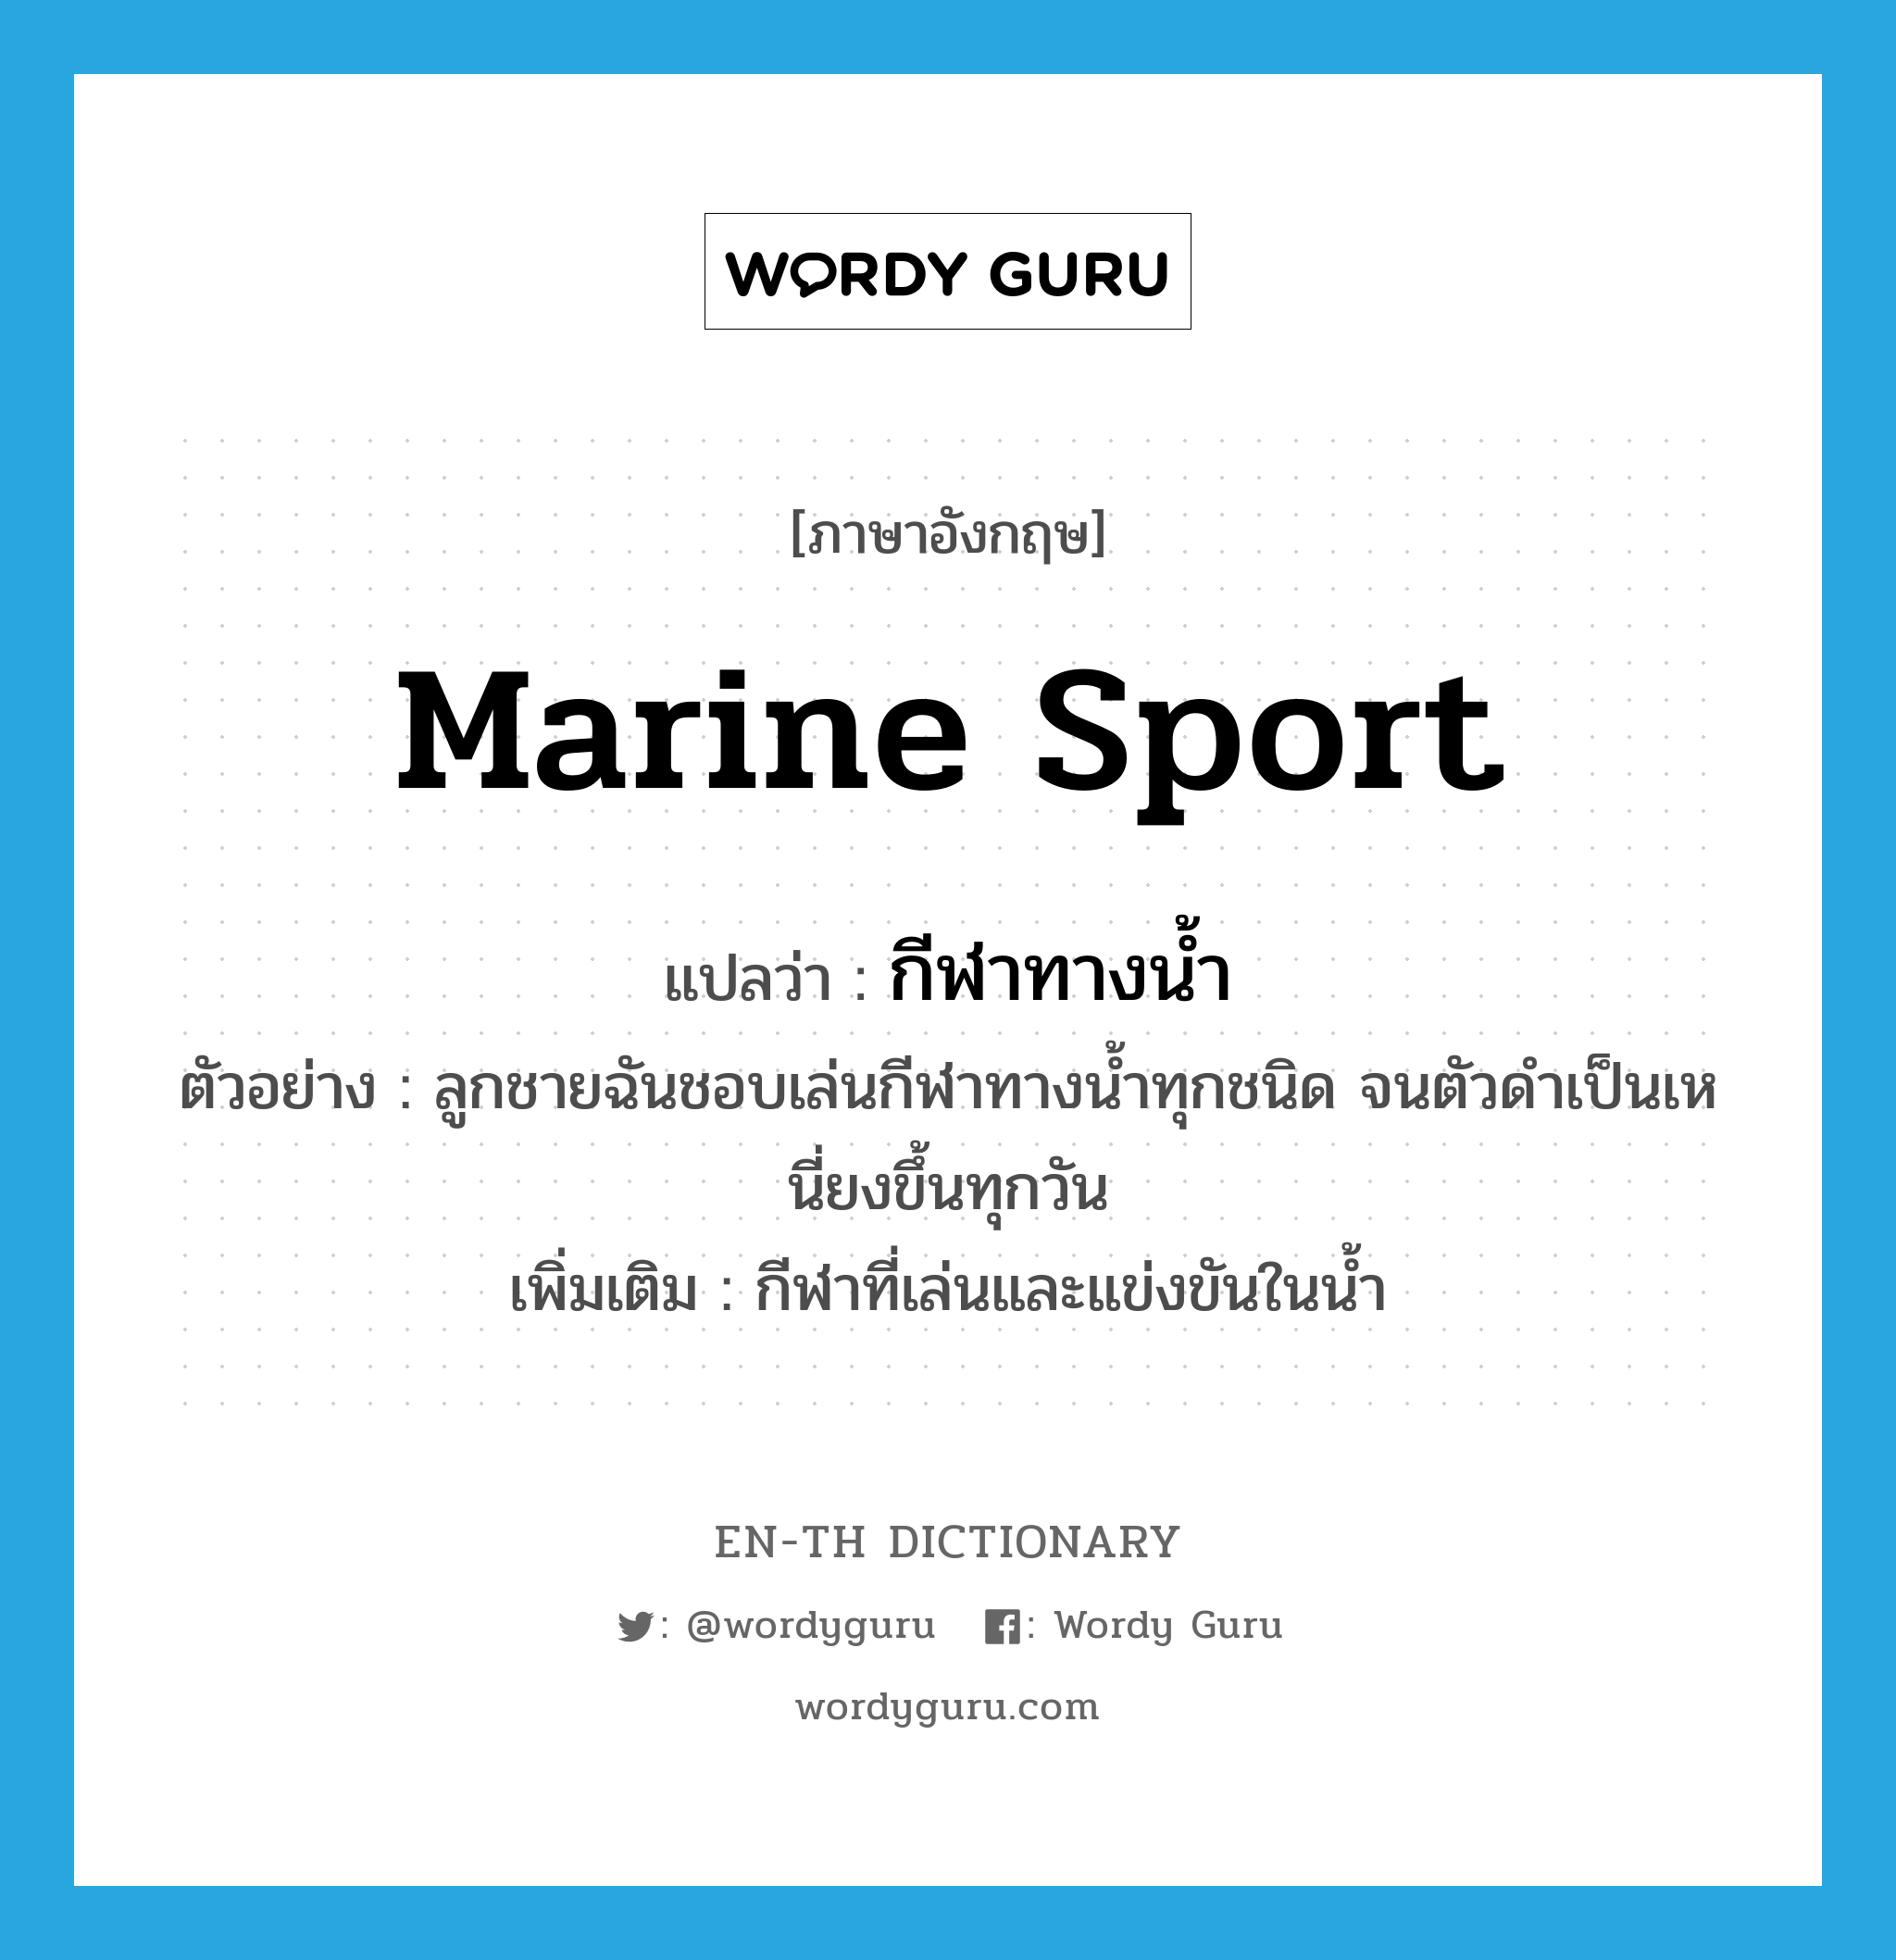 marine sport แปลว่า?, คำศัพท์ภาษาอังกฤษ marine sport แปลว่า กีฬาทางน้ำ ประเภท N ตัวอย่าง ลูกชายฉันชอบเล่นกีฬาทางน้ำทุกชนิด จนตัวดำเป็นเหนี่ยงขึ้นทุกวัน เพิ่มเติม กีฬาที่เล่นและแข่งขันในน้ำ หมวด N